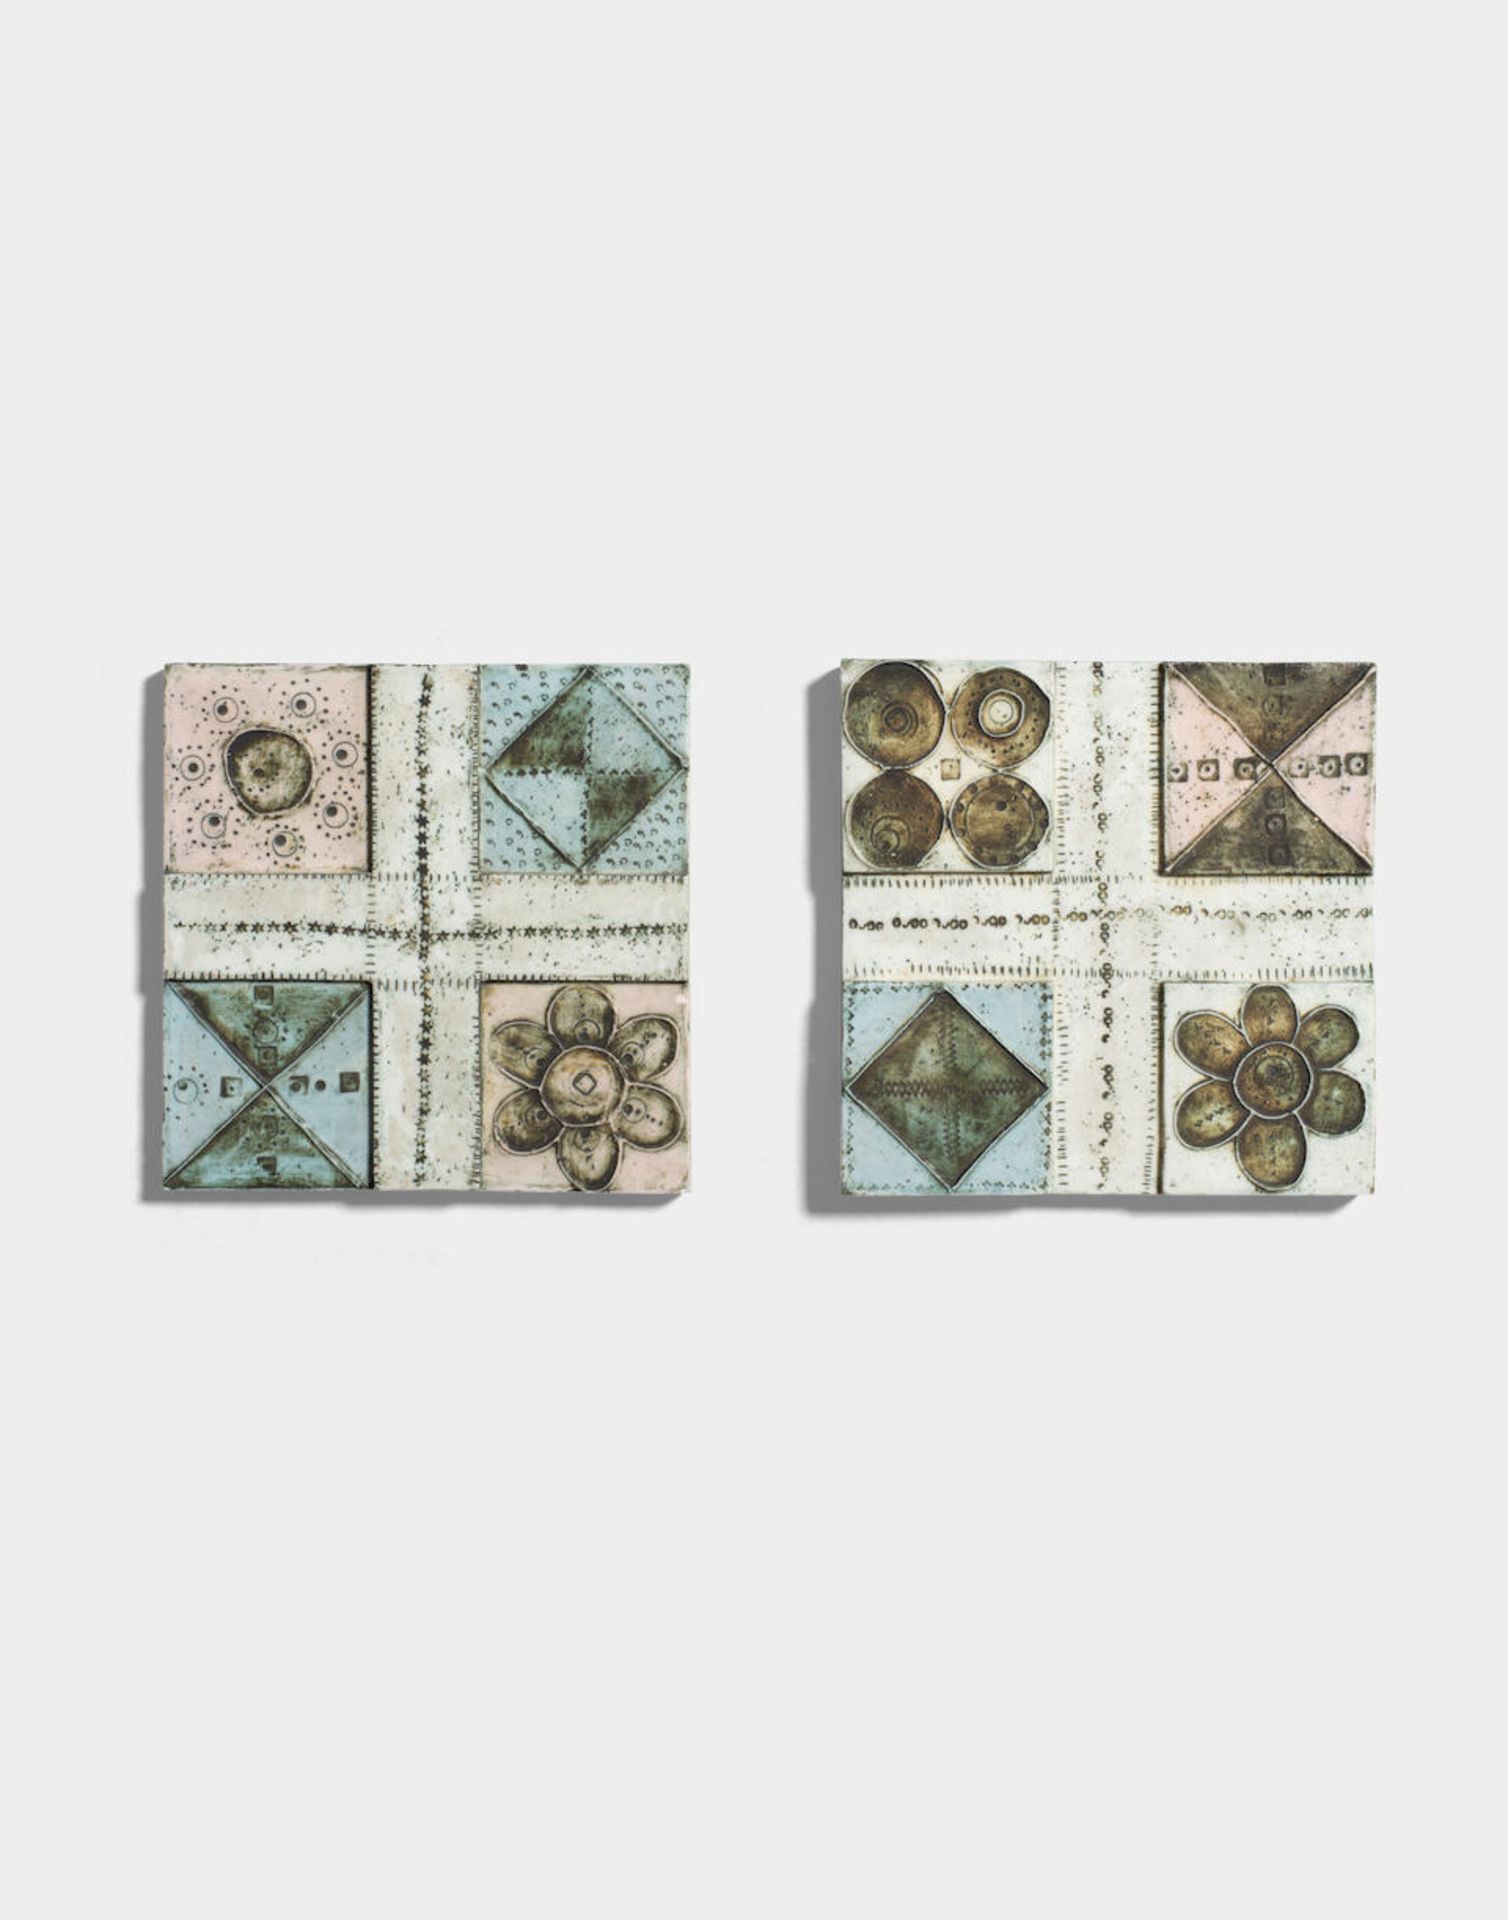 Rut Bryk Two tiles, 1960-1964